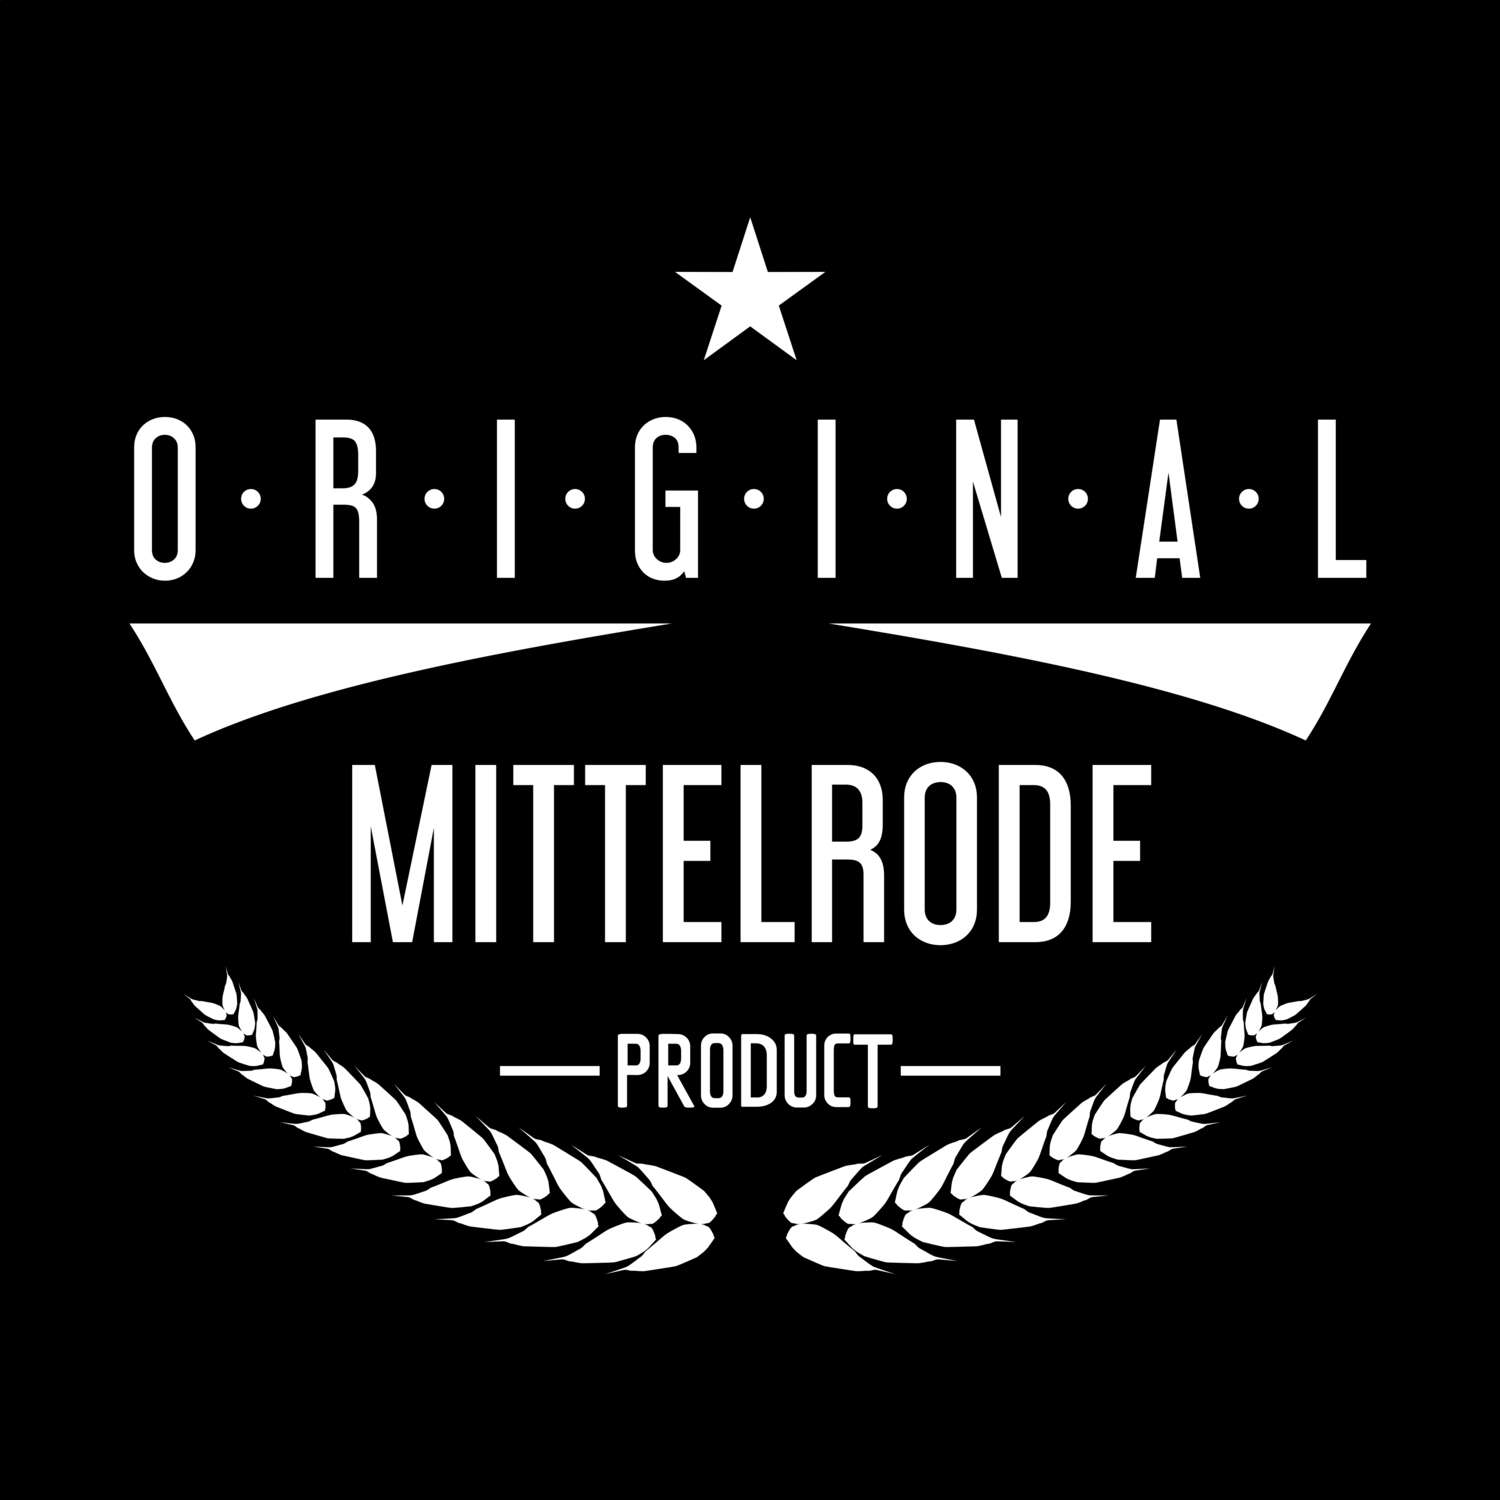 Mittelrode T-Shirt »Original Product«